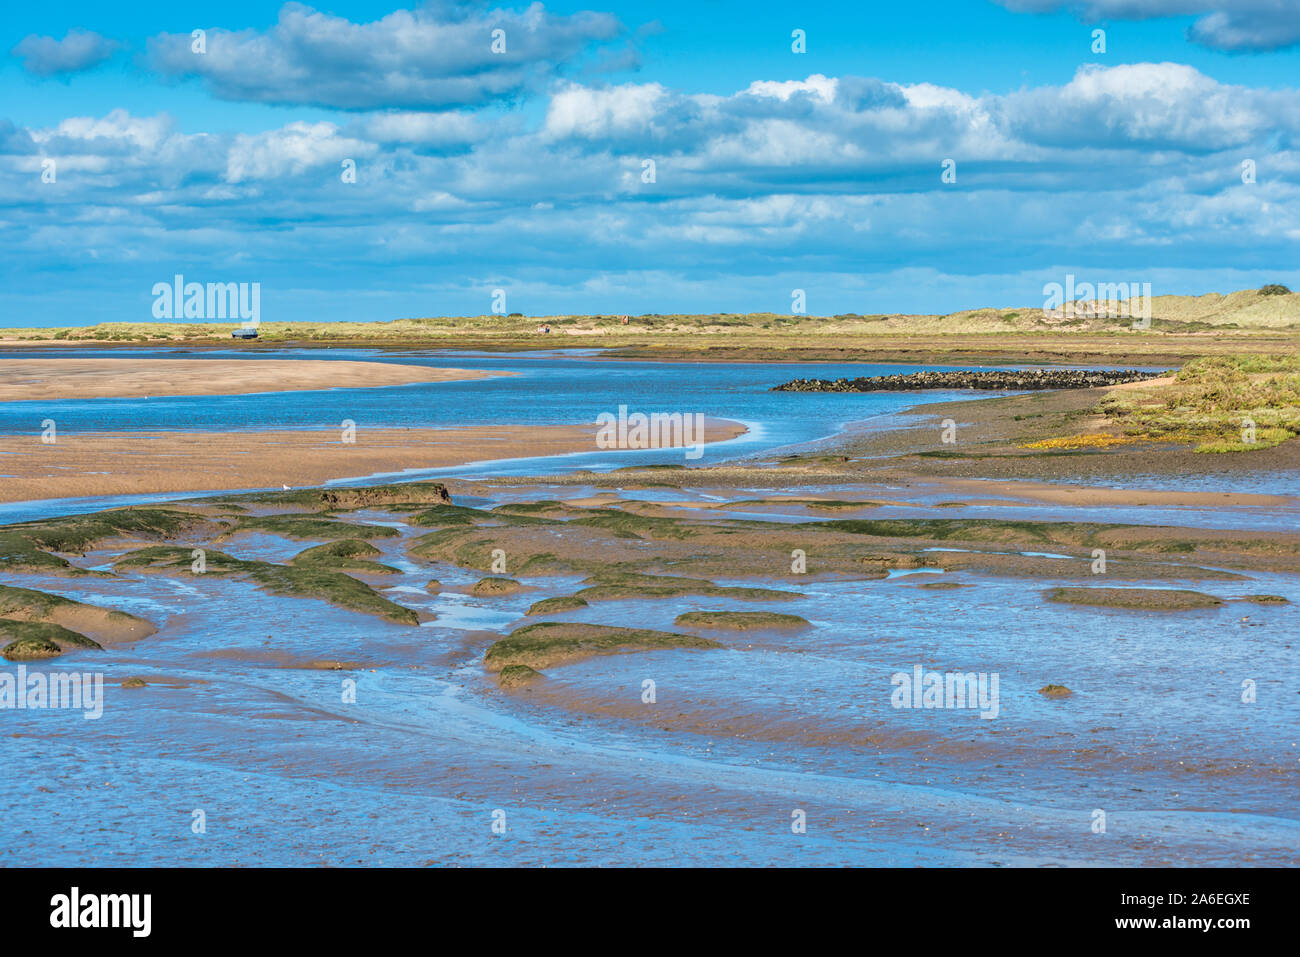 Vue sur les vasières à marée basse depuis le sentier national de la côte Norfolk, près de Burnham Overy Staithe, de l'île Scolt Head à l'arrière, East Anglia, Angleterre, Royaume-Uni. Banque D'Images